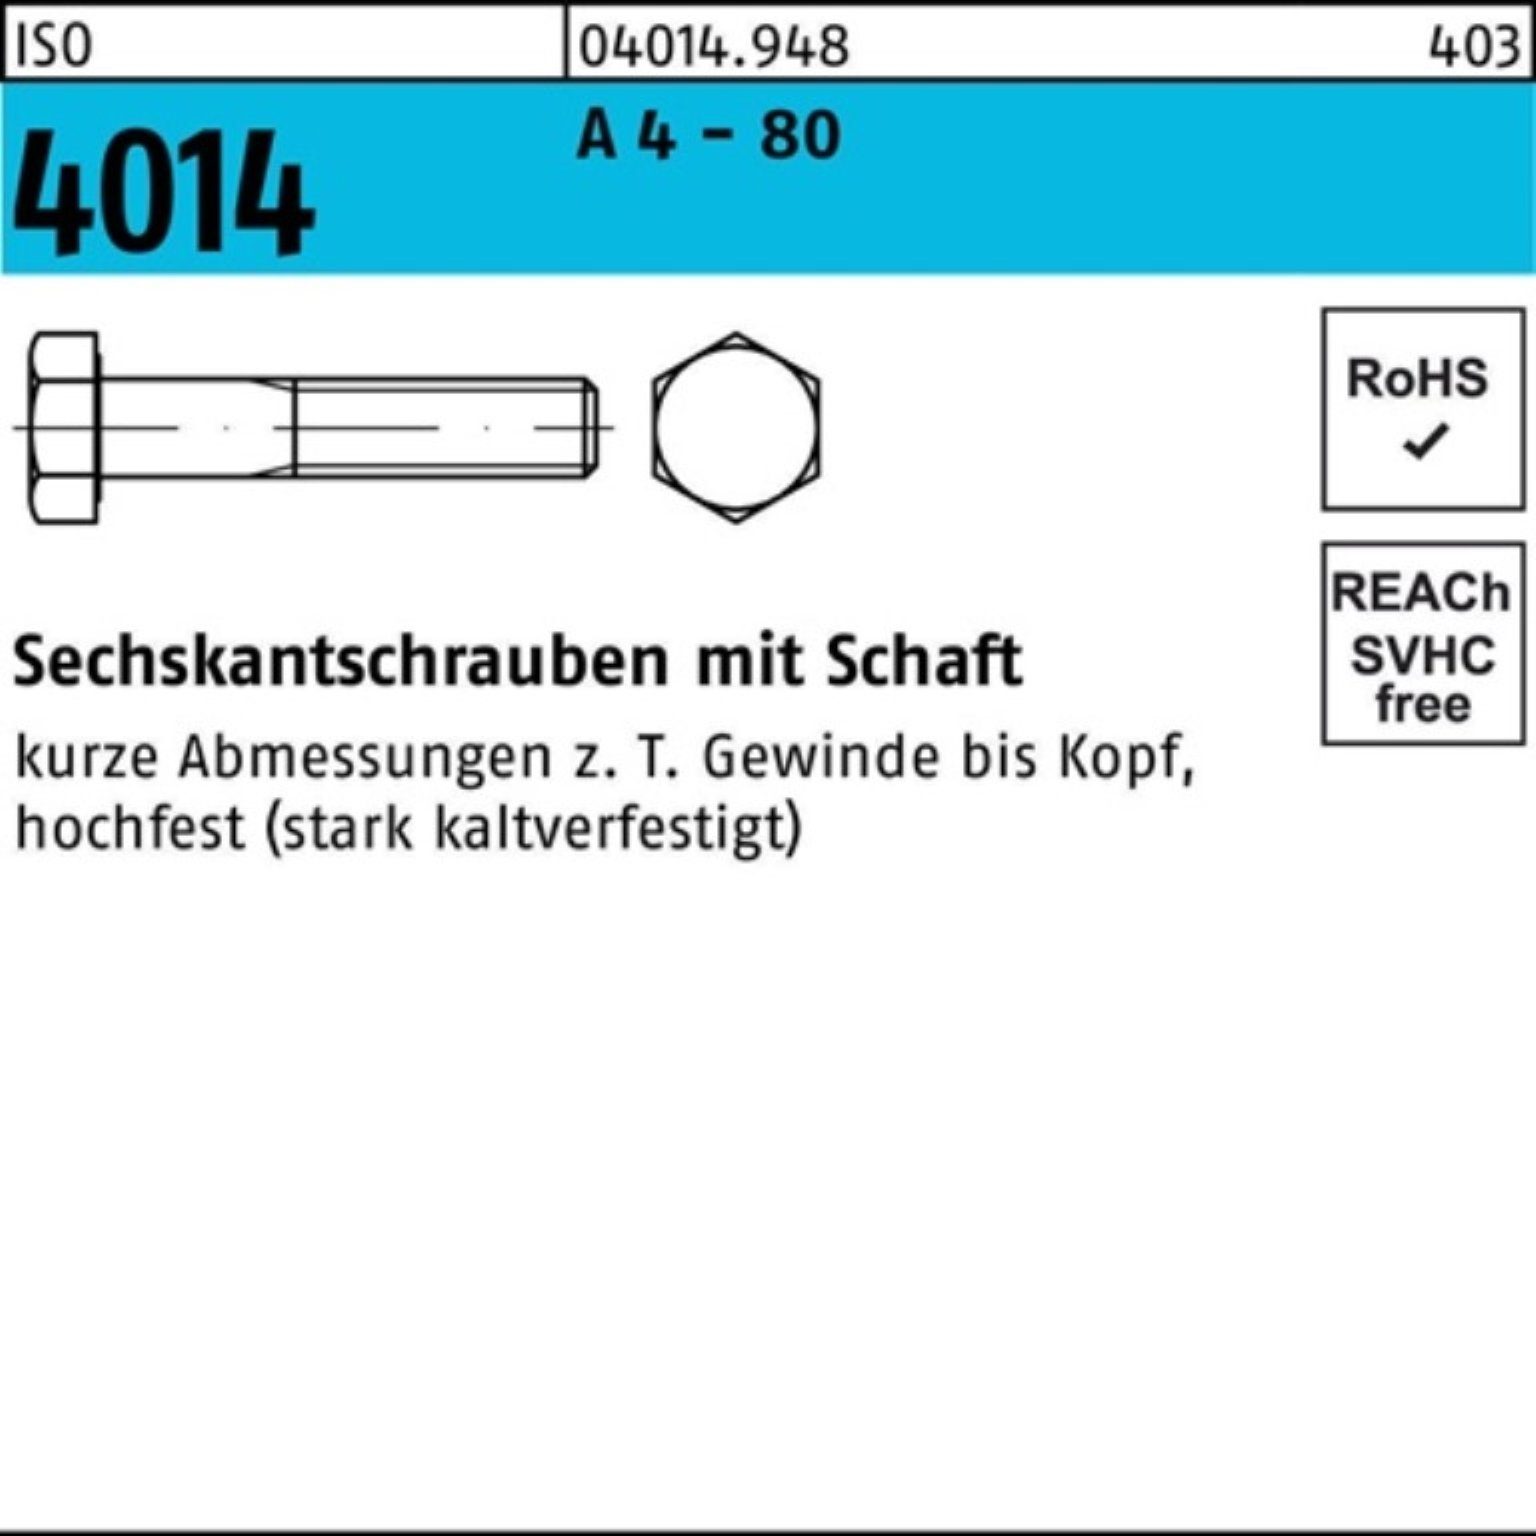 A Schaft ISO Stü M16x Bufab 80 4014 4 100er 120 25 Sechskantschraube Sechskantschraube Pack -